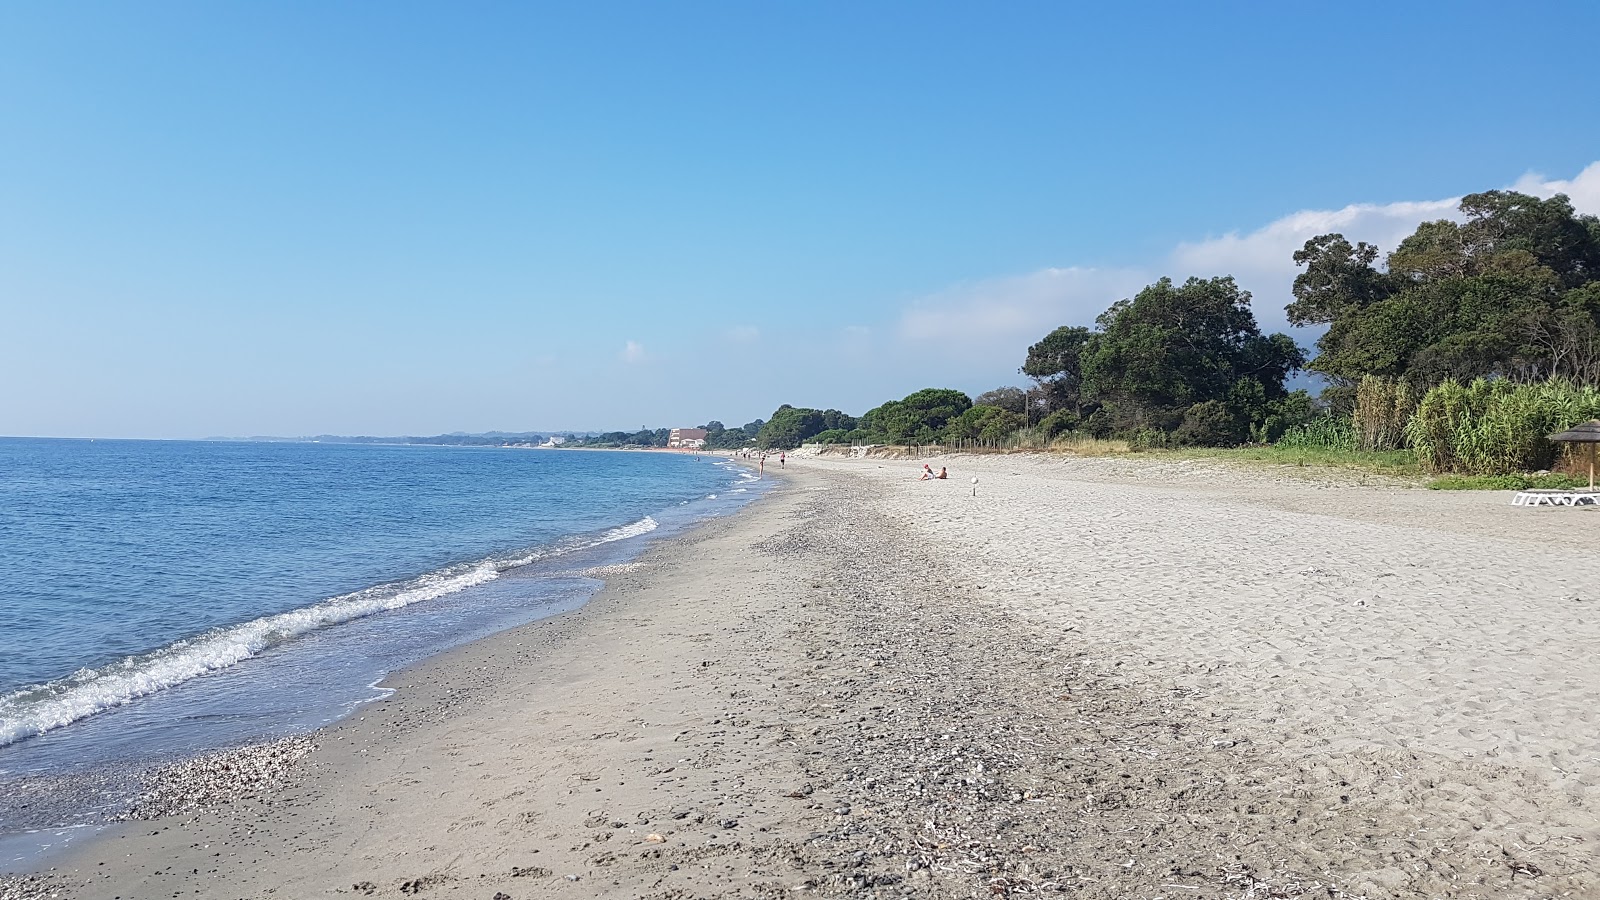 Ponticchio beach'in fotoğrafı plaj tatil beldesi alanı